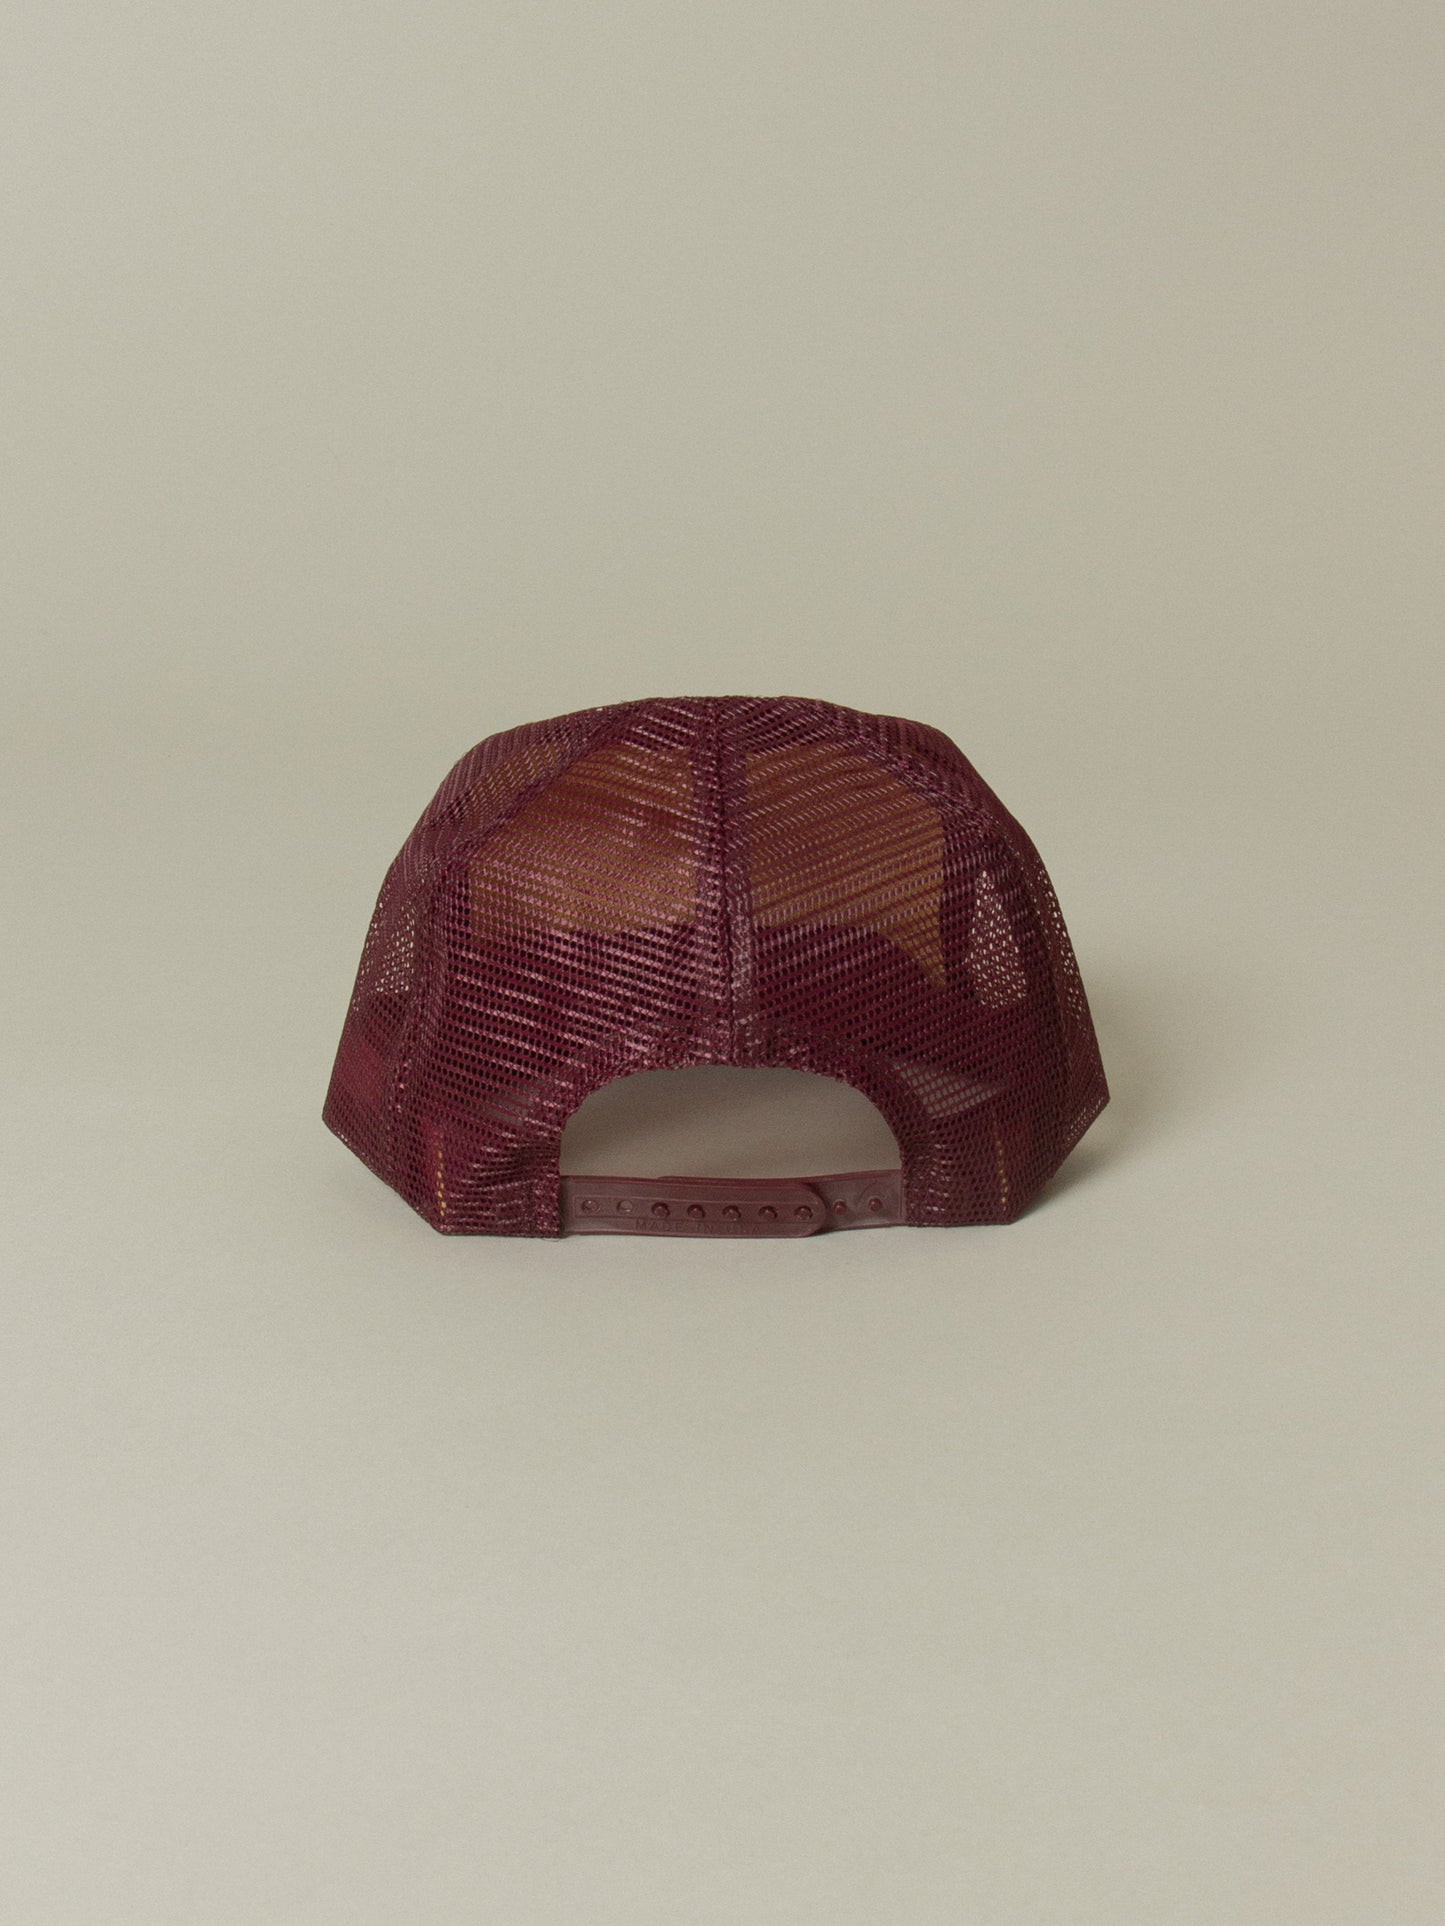 Vtg 1990s Burgundy Beaverdale Snapback Cap - Made in USA (OS)